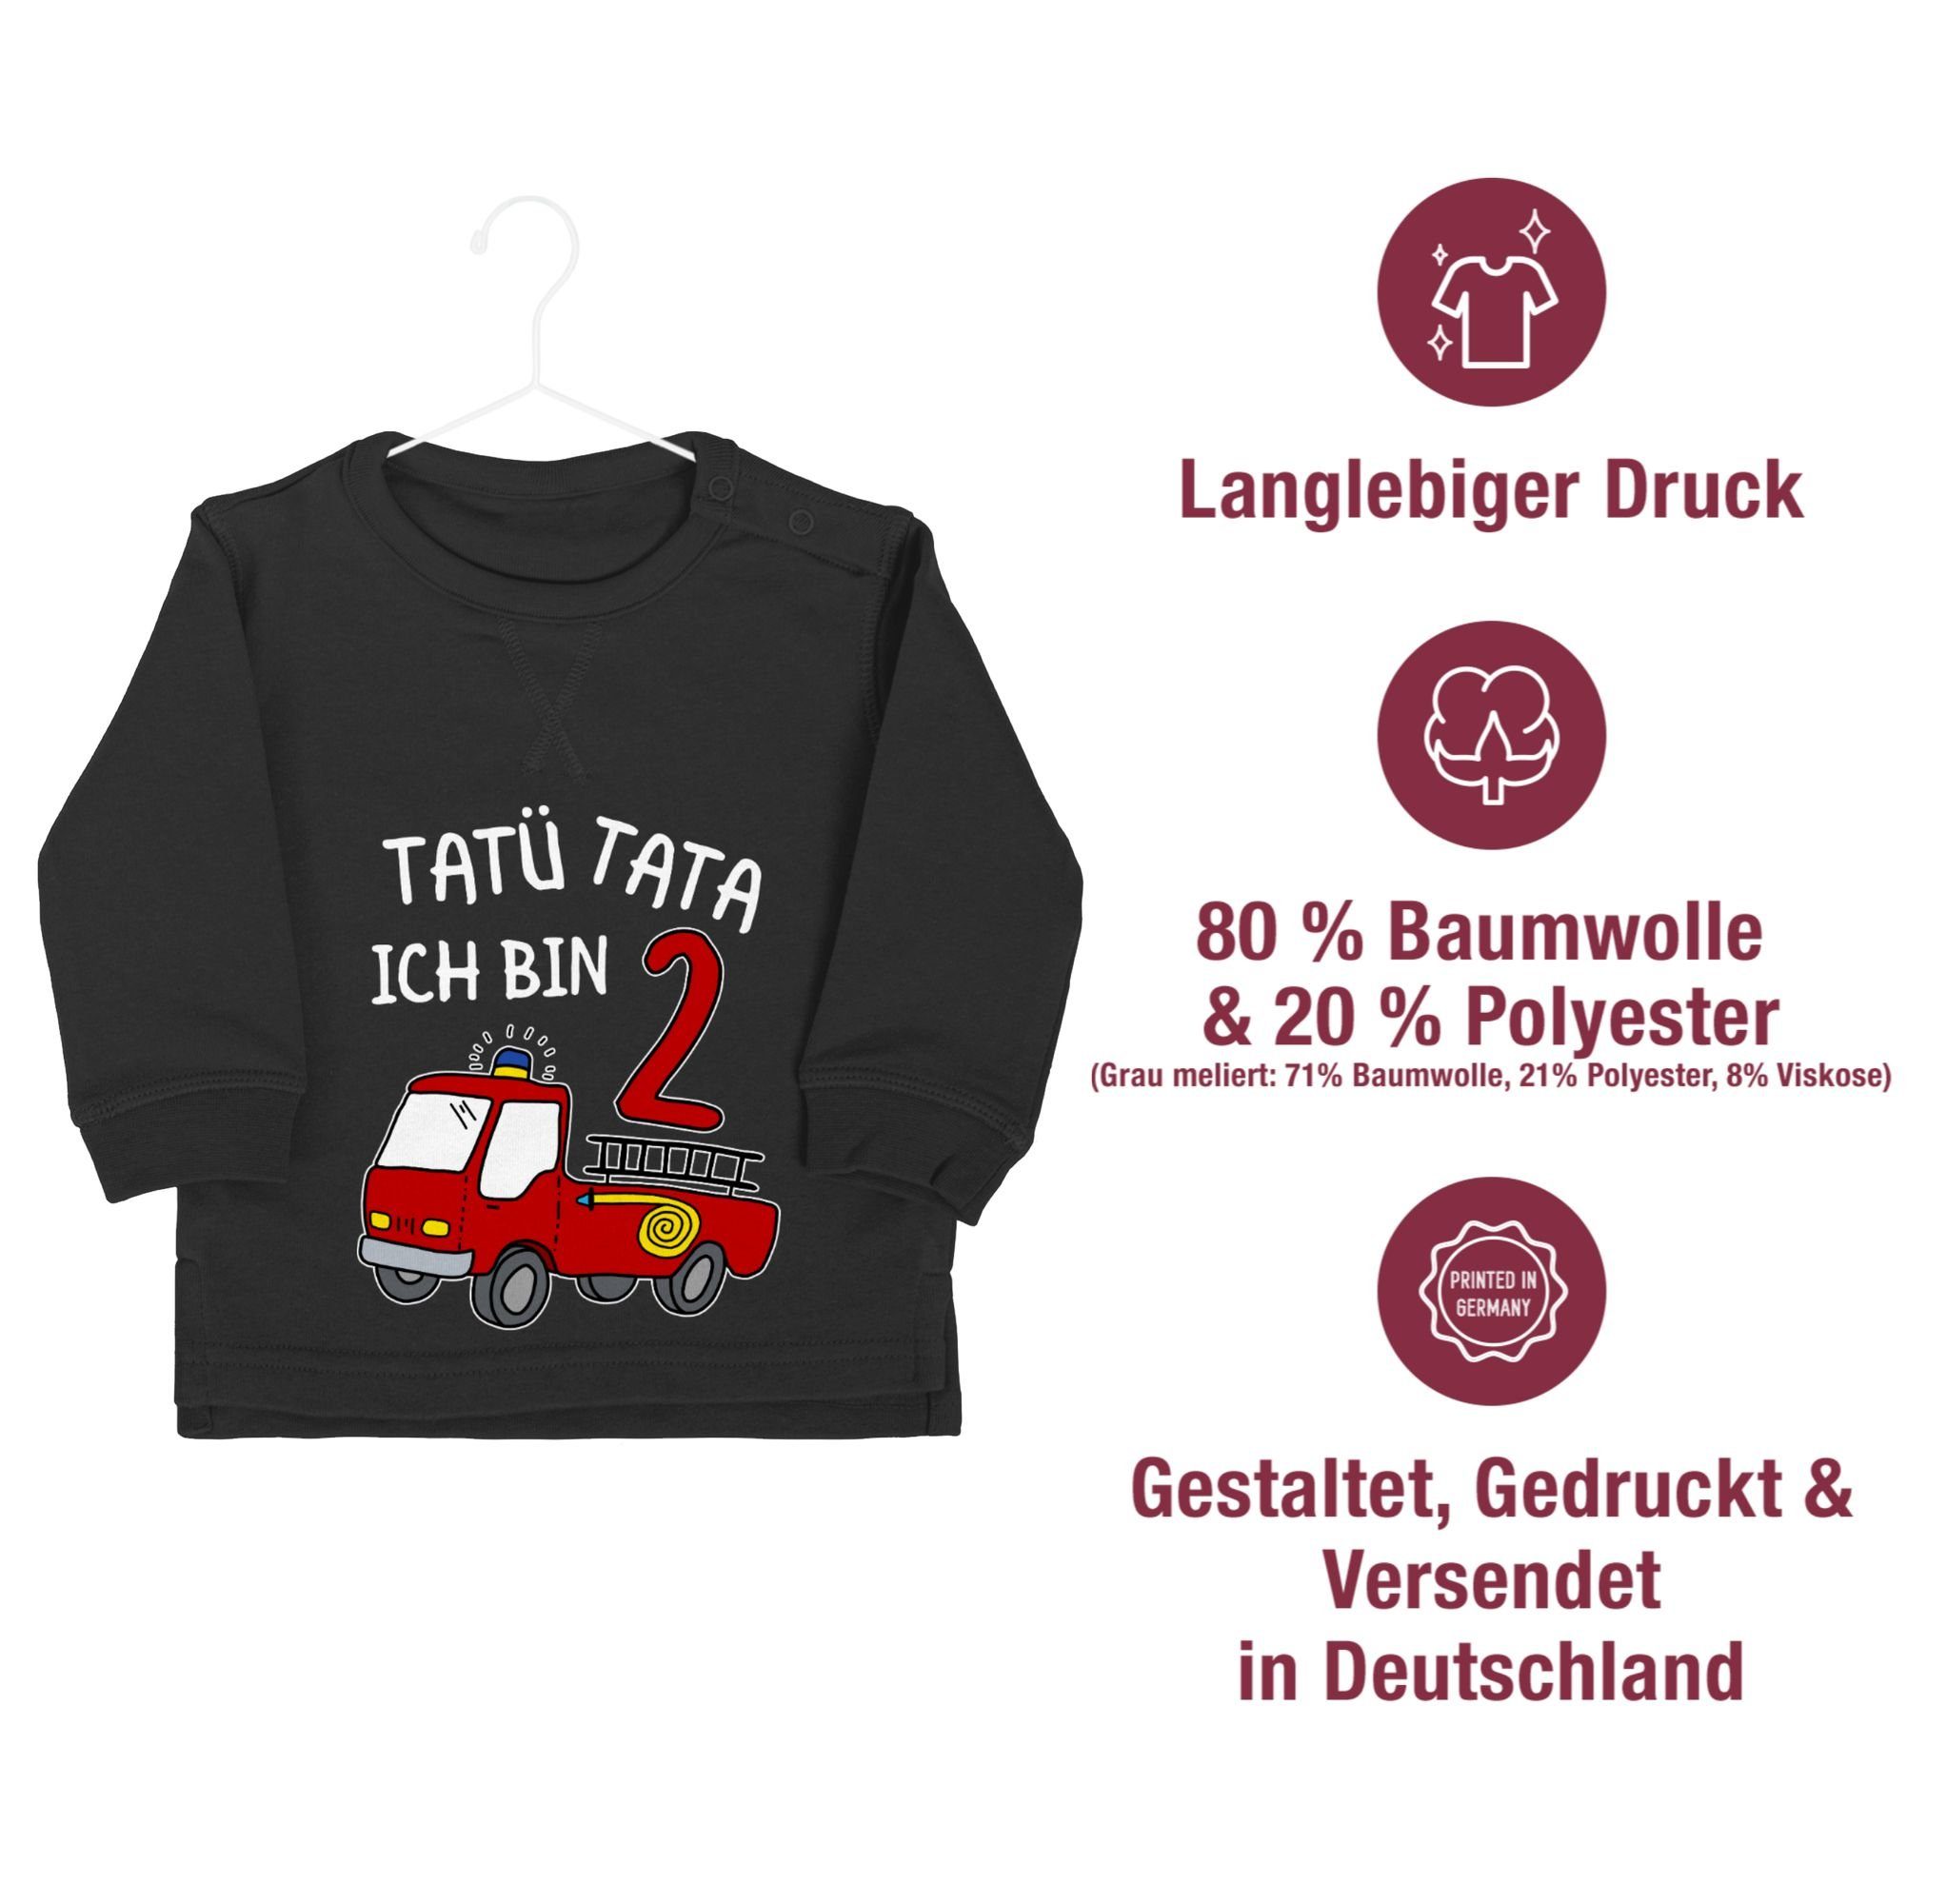 Shirtracer Sweatshirt Tatü Tata Ich 2 bin 2. zwei Schwarz Feuerwehrauto Geburtstag